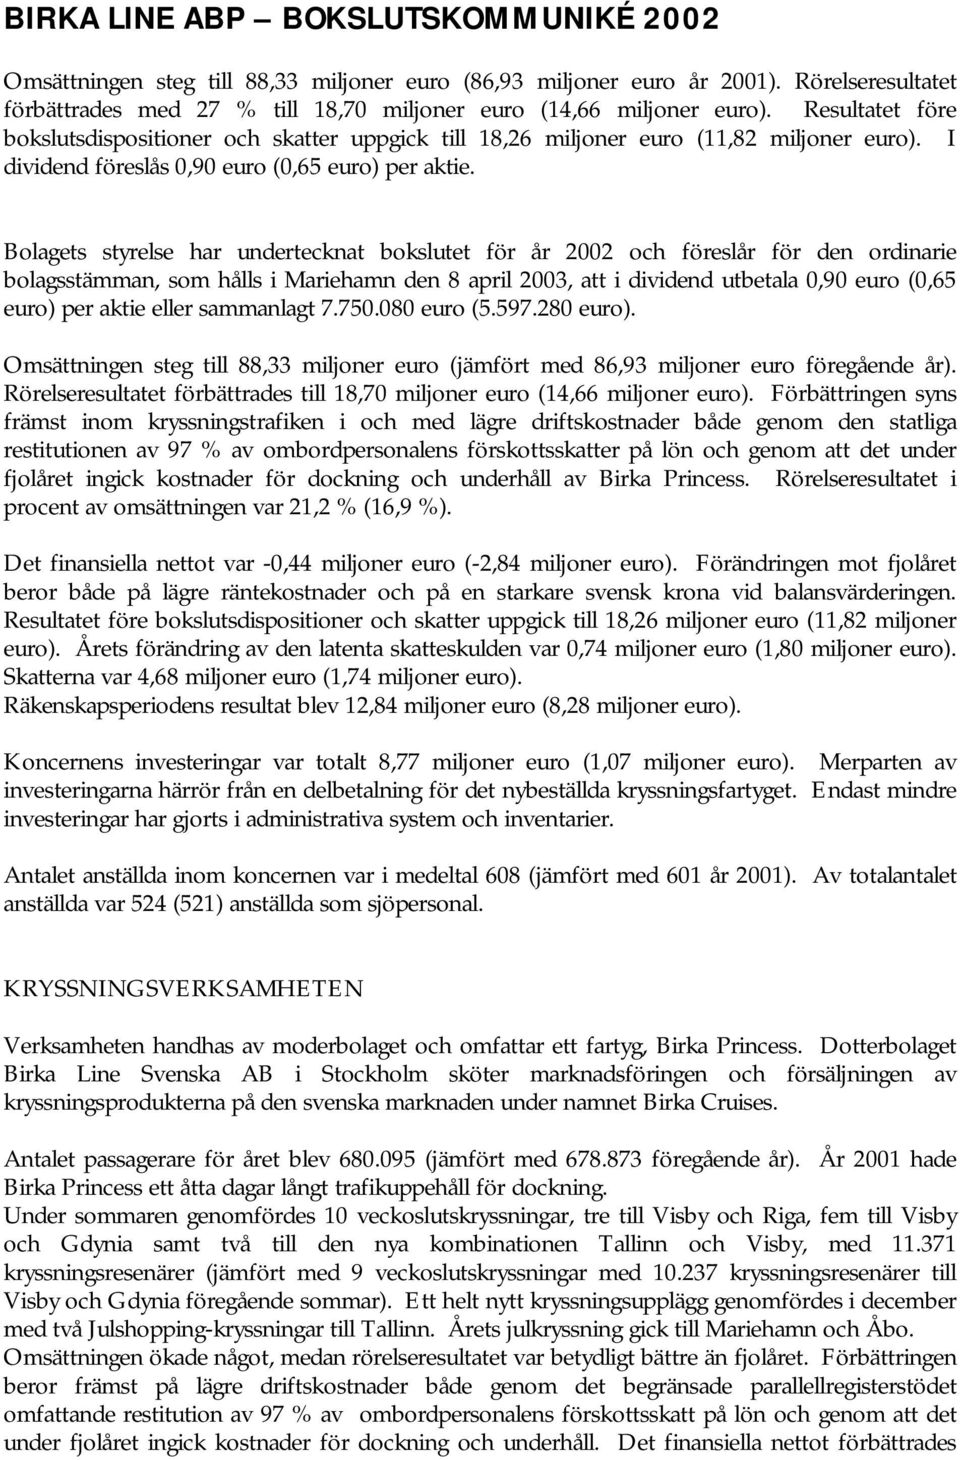 Bolagets styrelse har undertecknat bokslutet för år 2002 och föreslår för den ordinarie bolagsstämman, som hålls i Mariehamn den 8 april 2003, att i dividend utbetala 0,90 euro (0,65 euro) per aktie